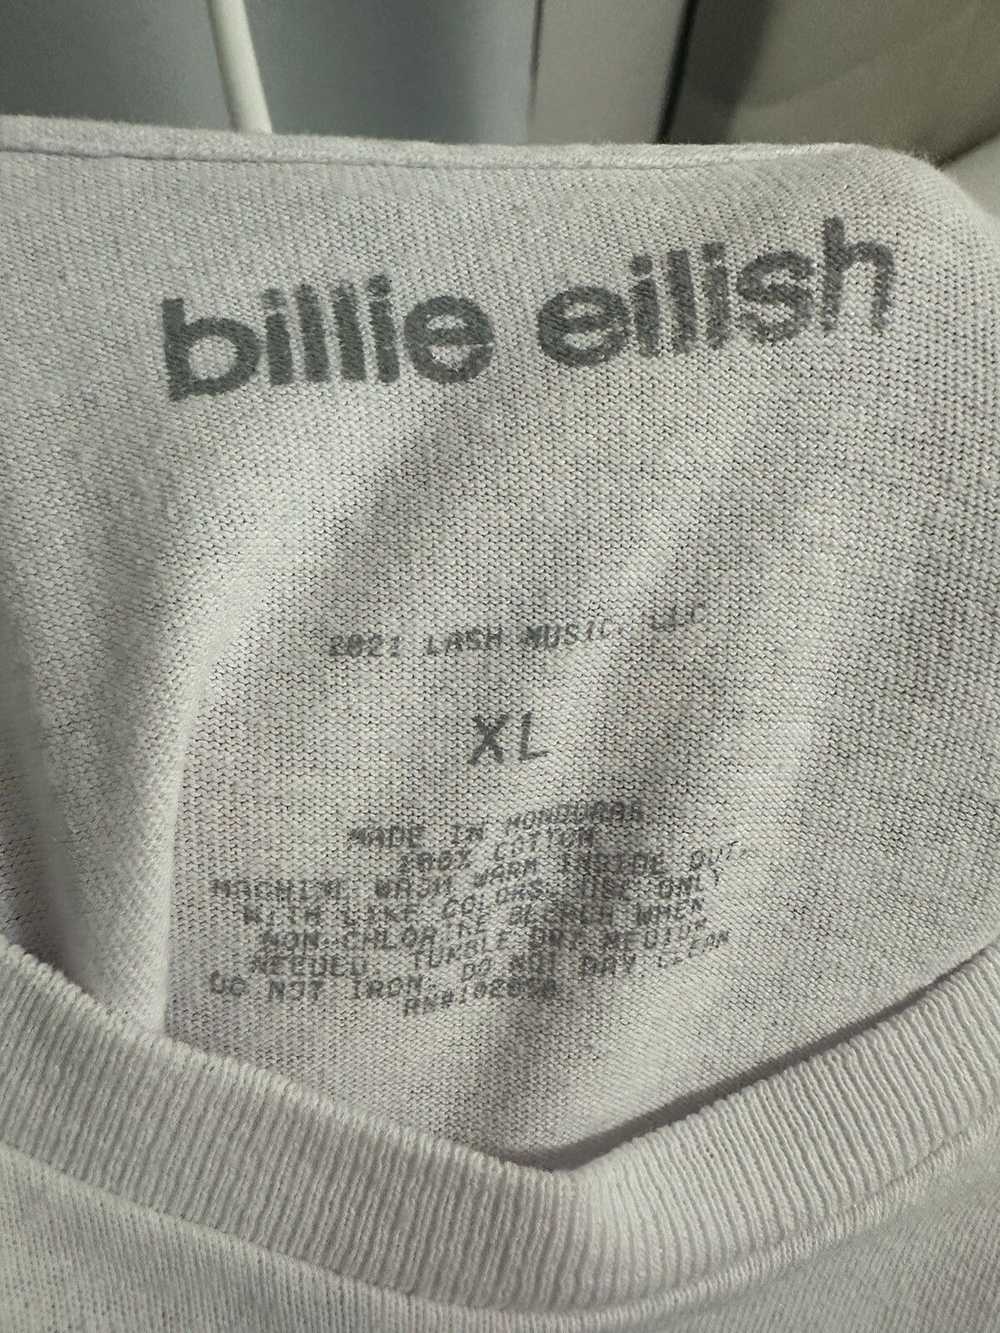 Billie Eilish Billie Eilish t shirt - image 3